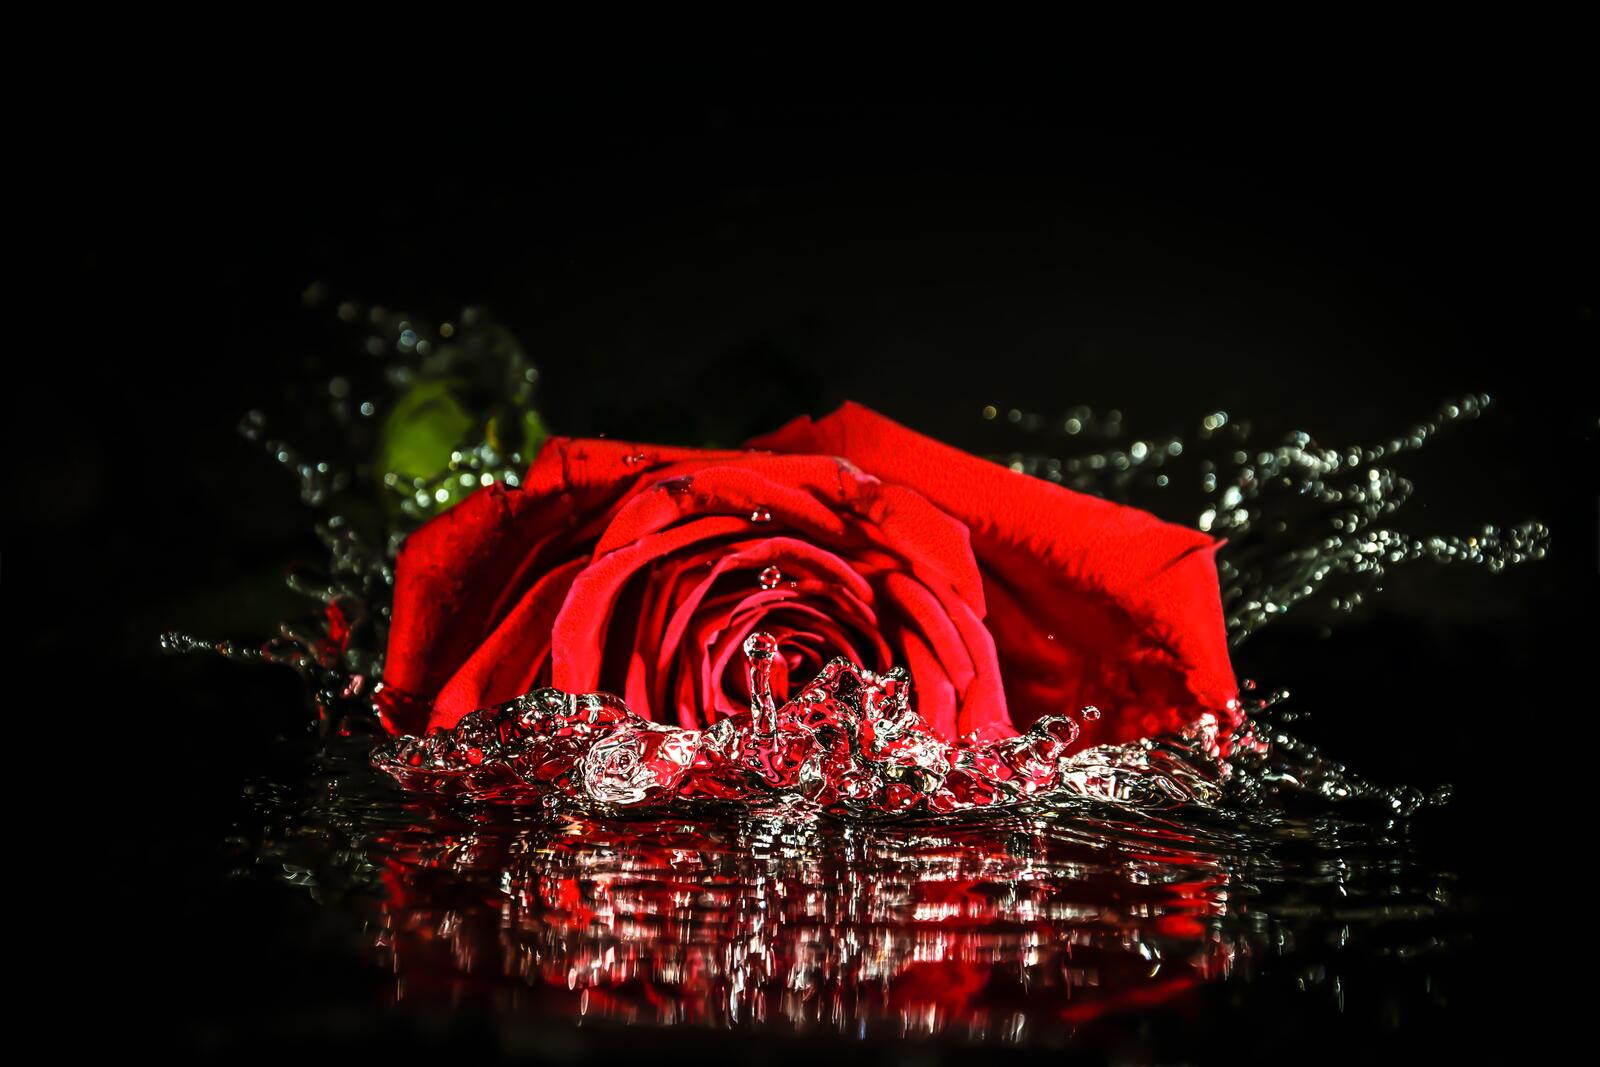 Обои роза жидкость вода на рабочий стол